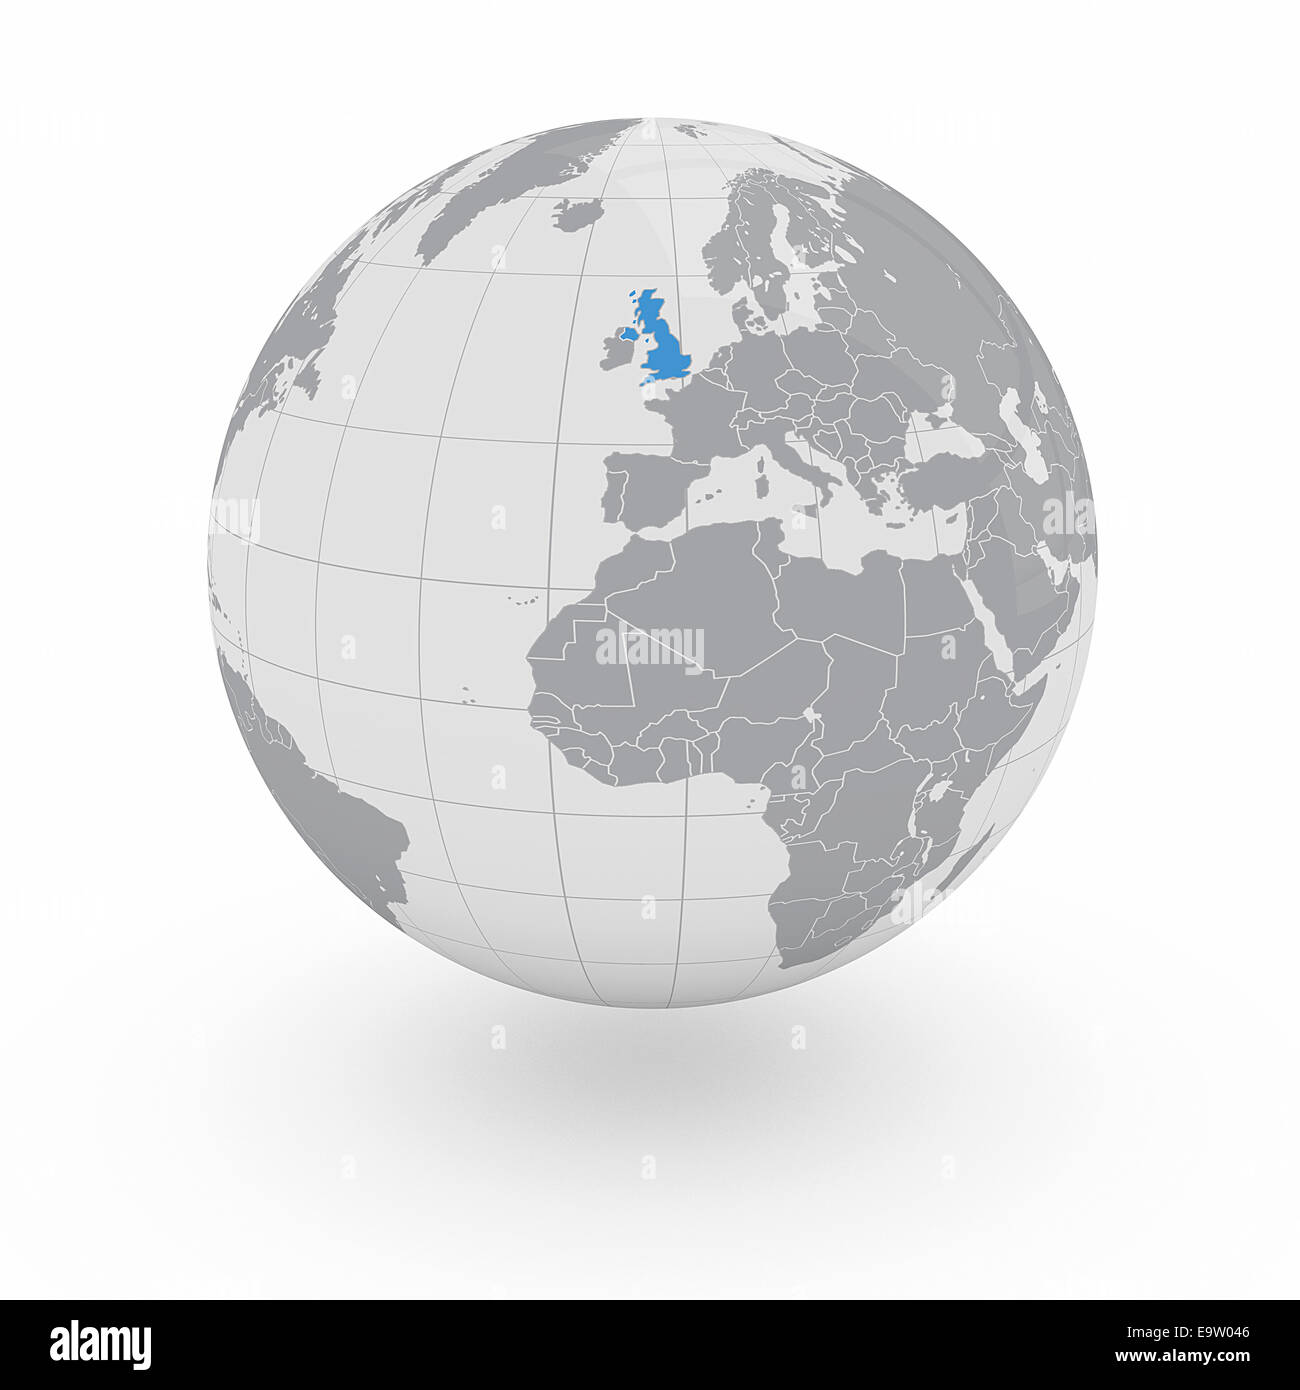 United Kingdom of Great Britain auf Globus isoliert auf weißem Hintergrund Stockfoto